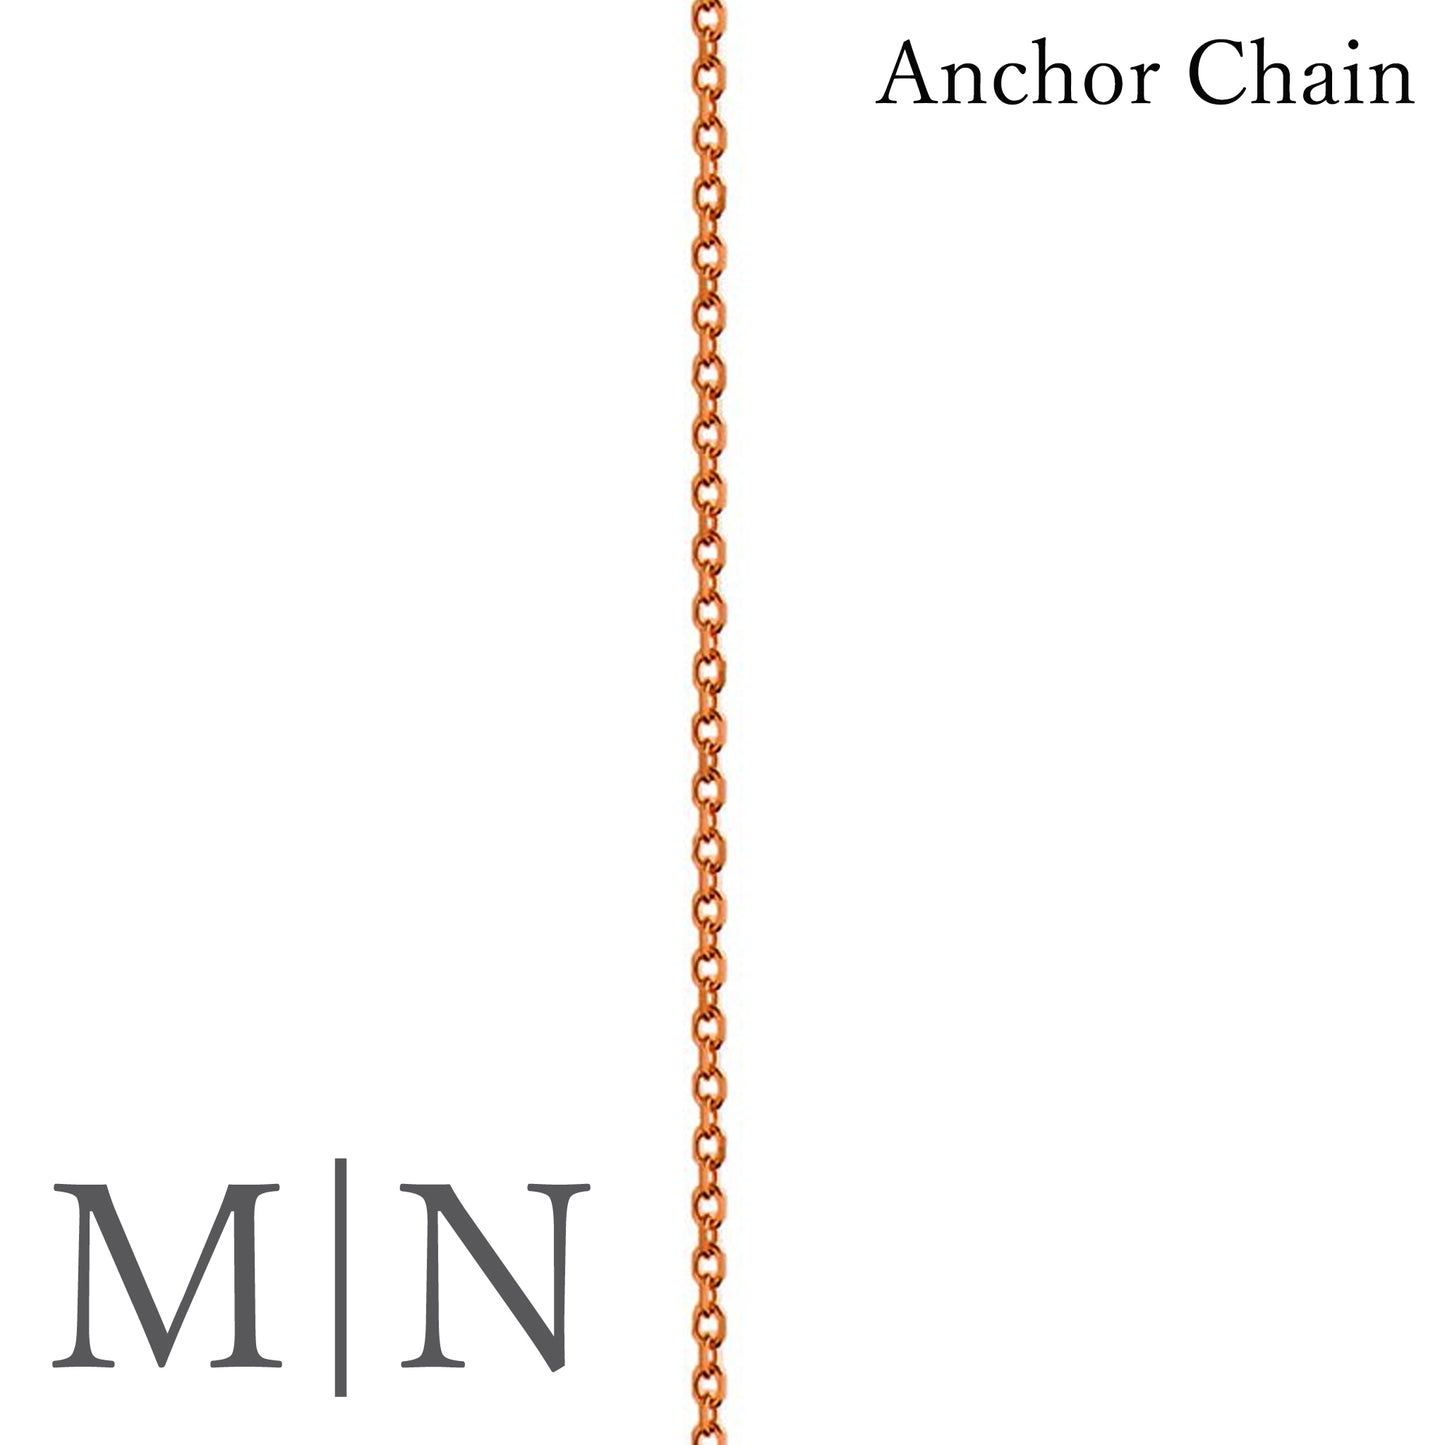 Anchor Chains